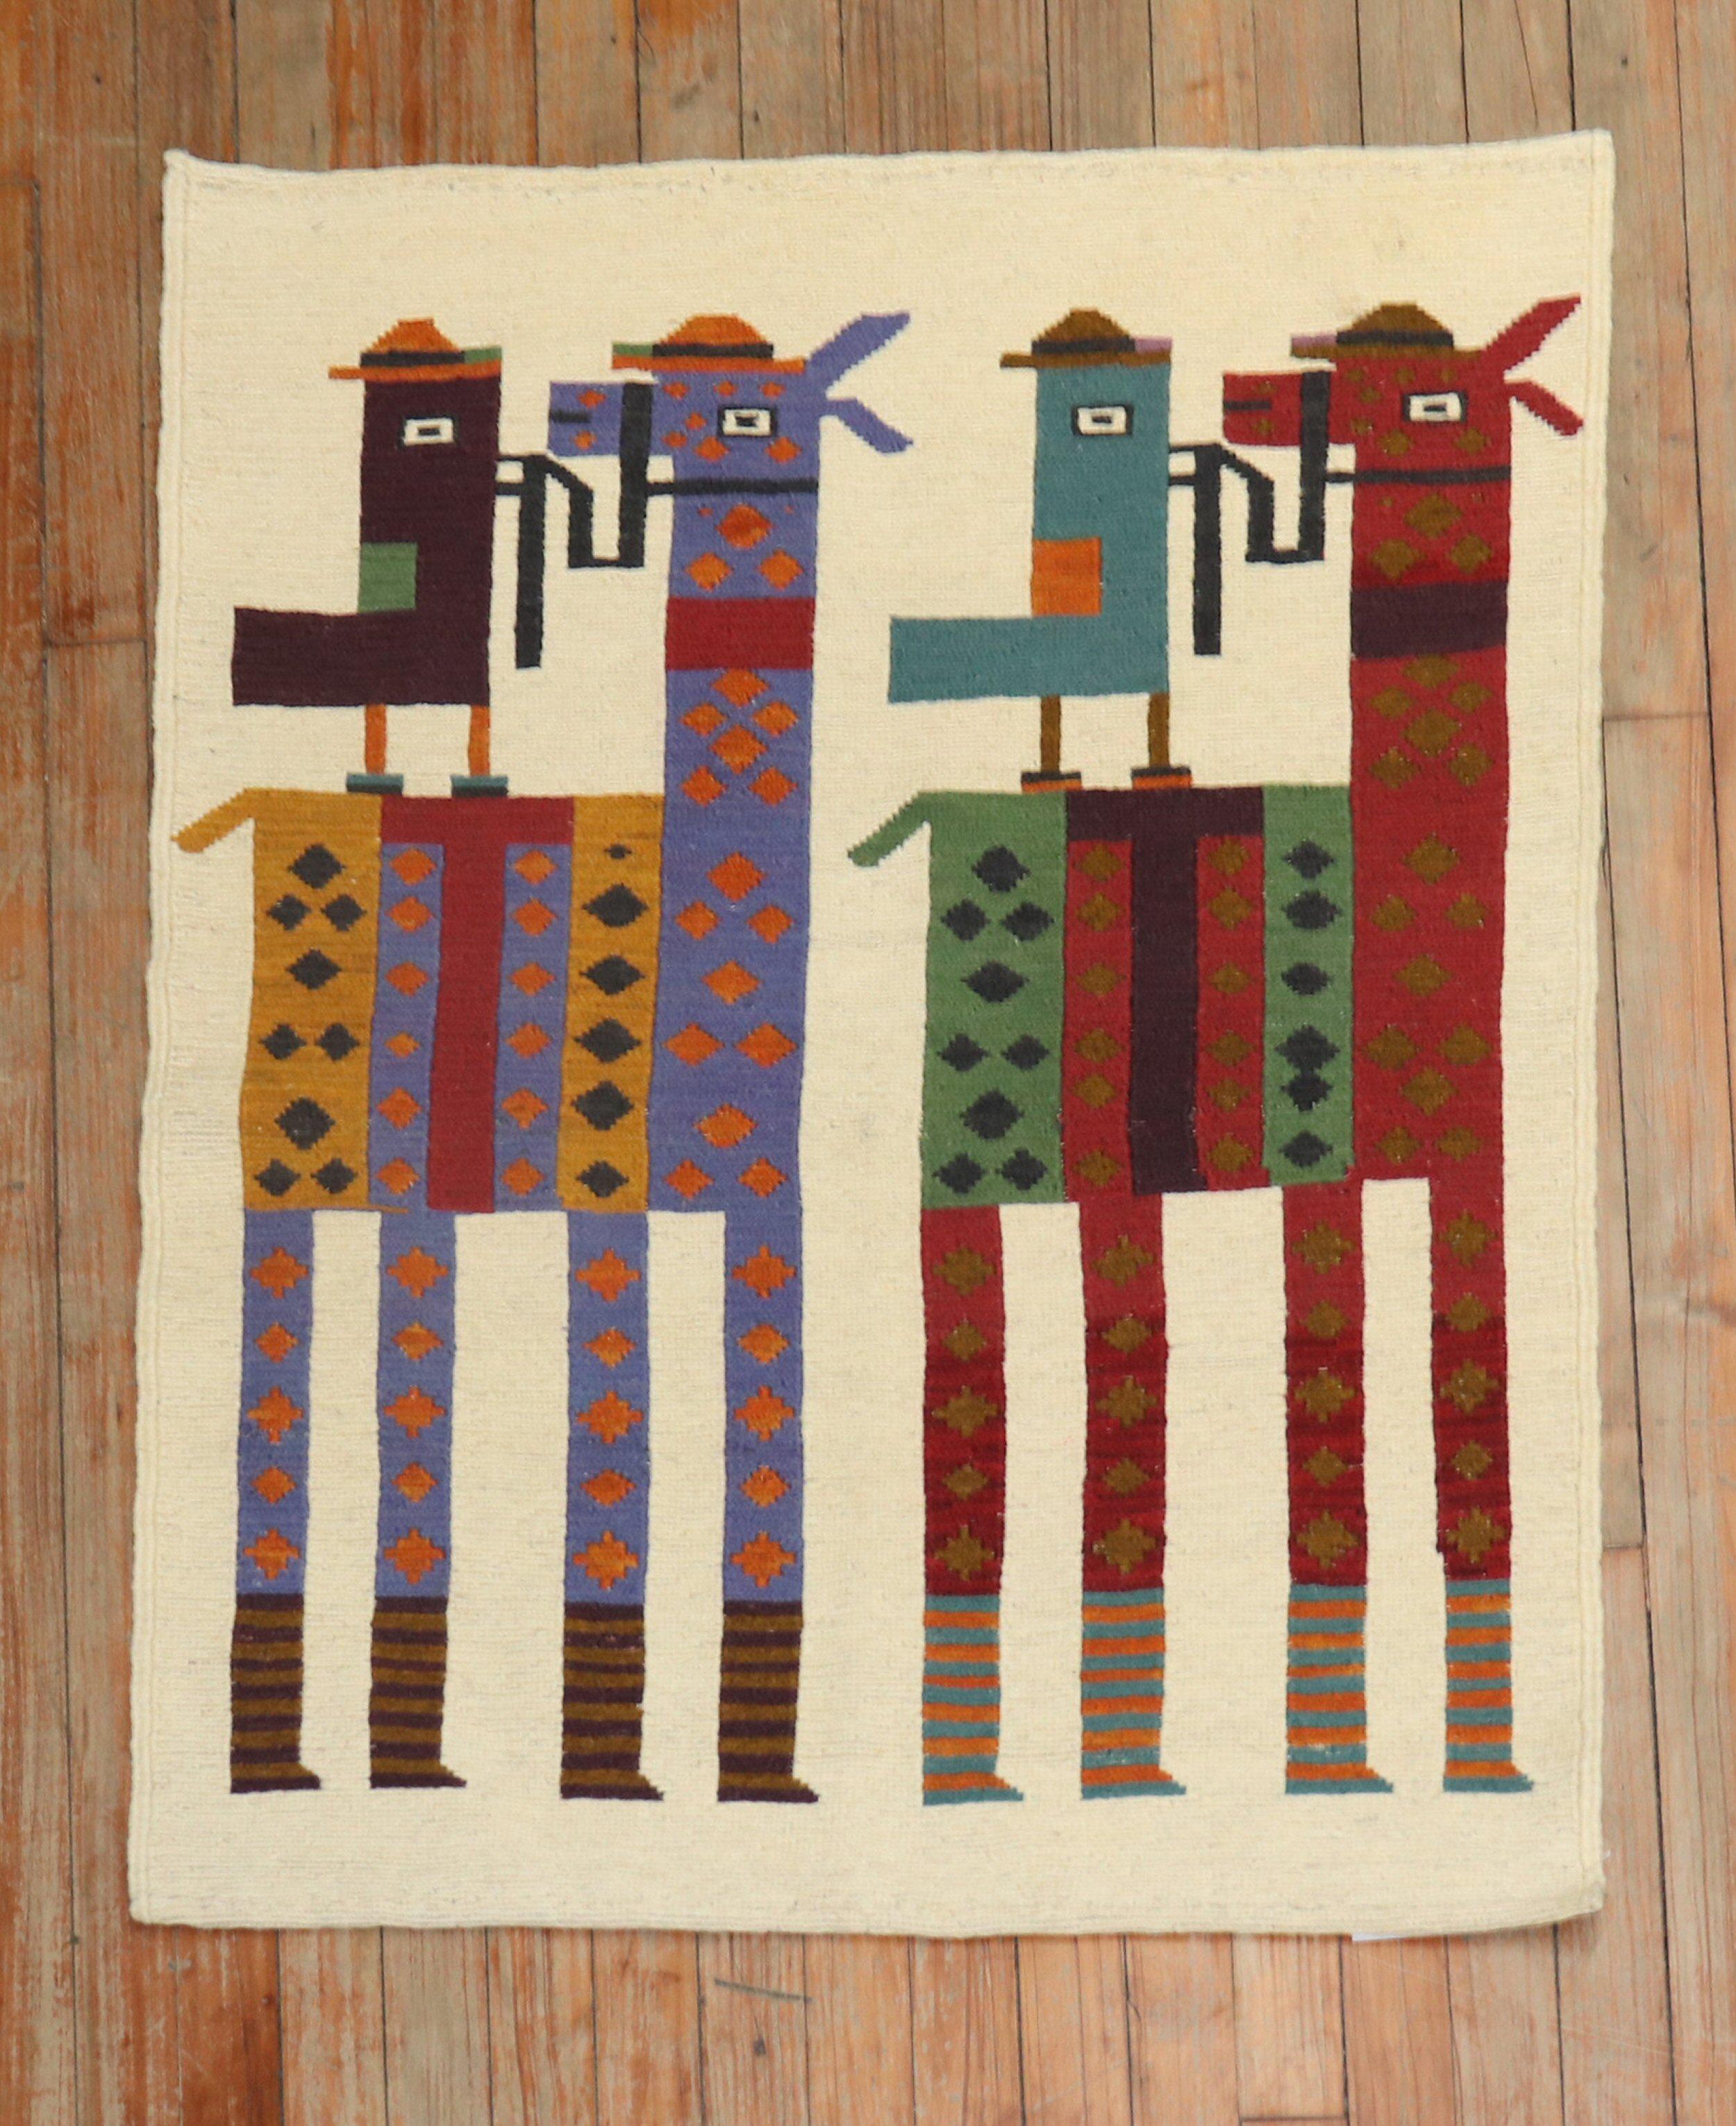 Persischer Kelim des späten 20. Jahrhunderts mit 2 kleinen Vögeln und 2 Mini-Pferden

Maße: 2'8'' x 3'5''

Ursprünglich gehörte es einem privaten Persiensammler, der eine individuelle Kollektion von Flachgeweben mit skurrilen Themen und Elementen